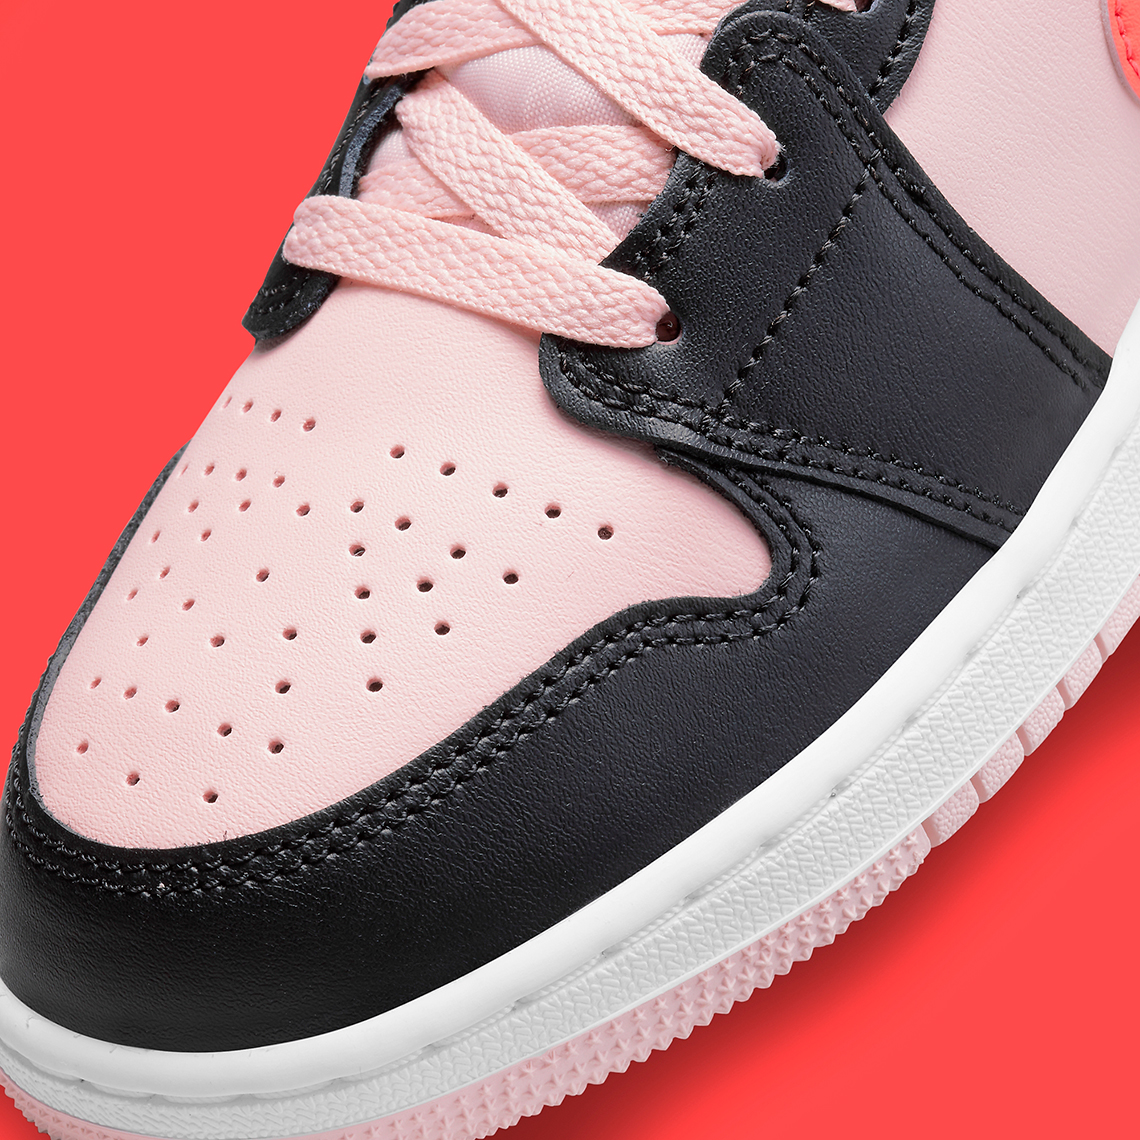 Air Jordan 1 Mid GS Black Crimson Pink 554725-604 | SneakerNews.com